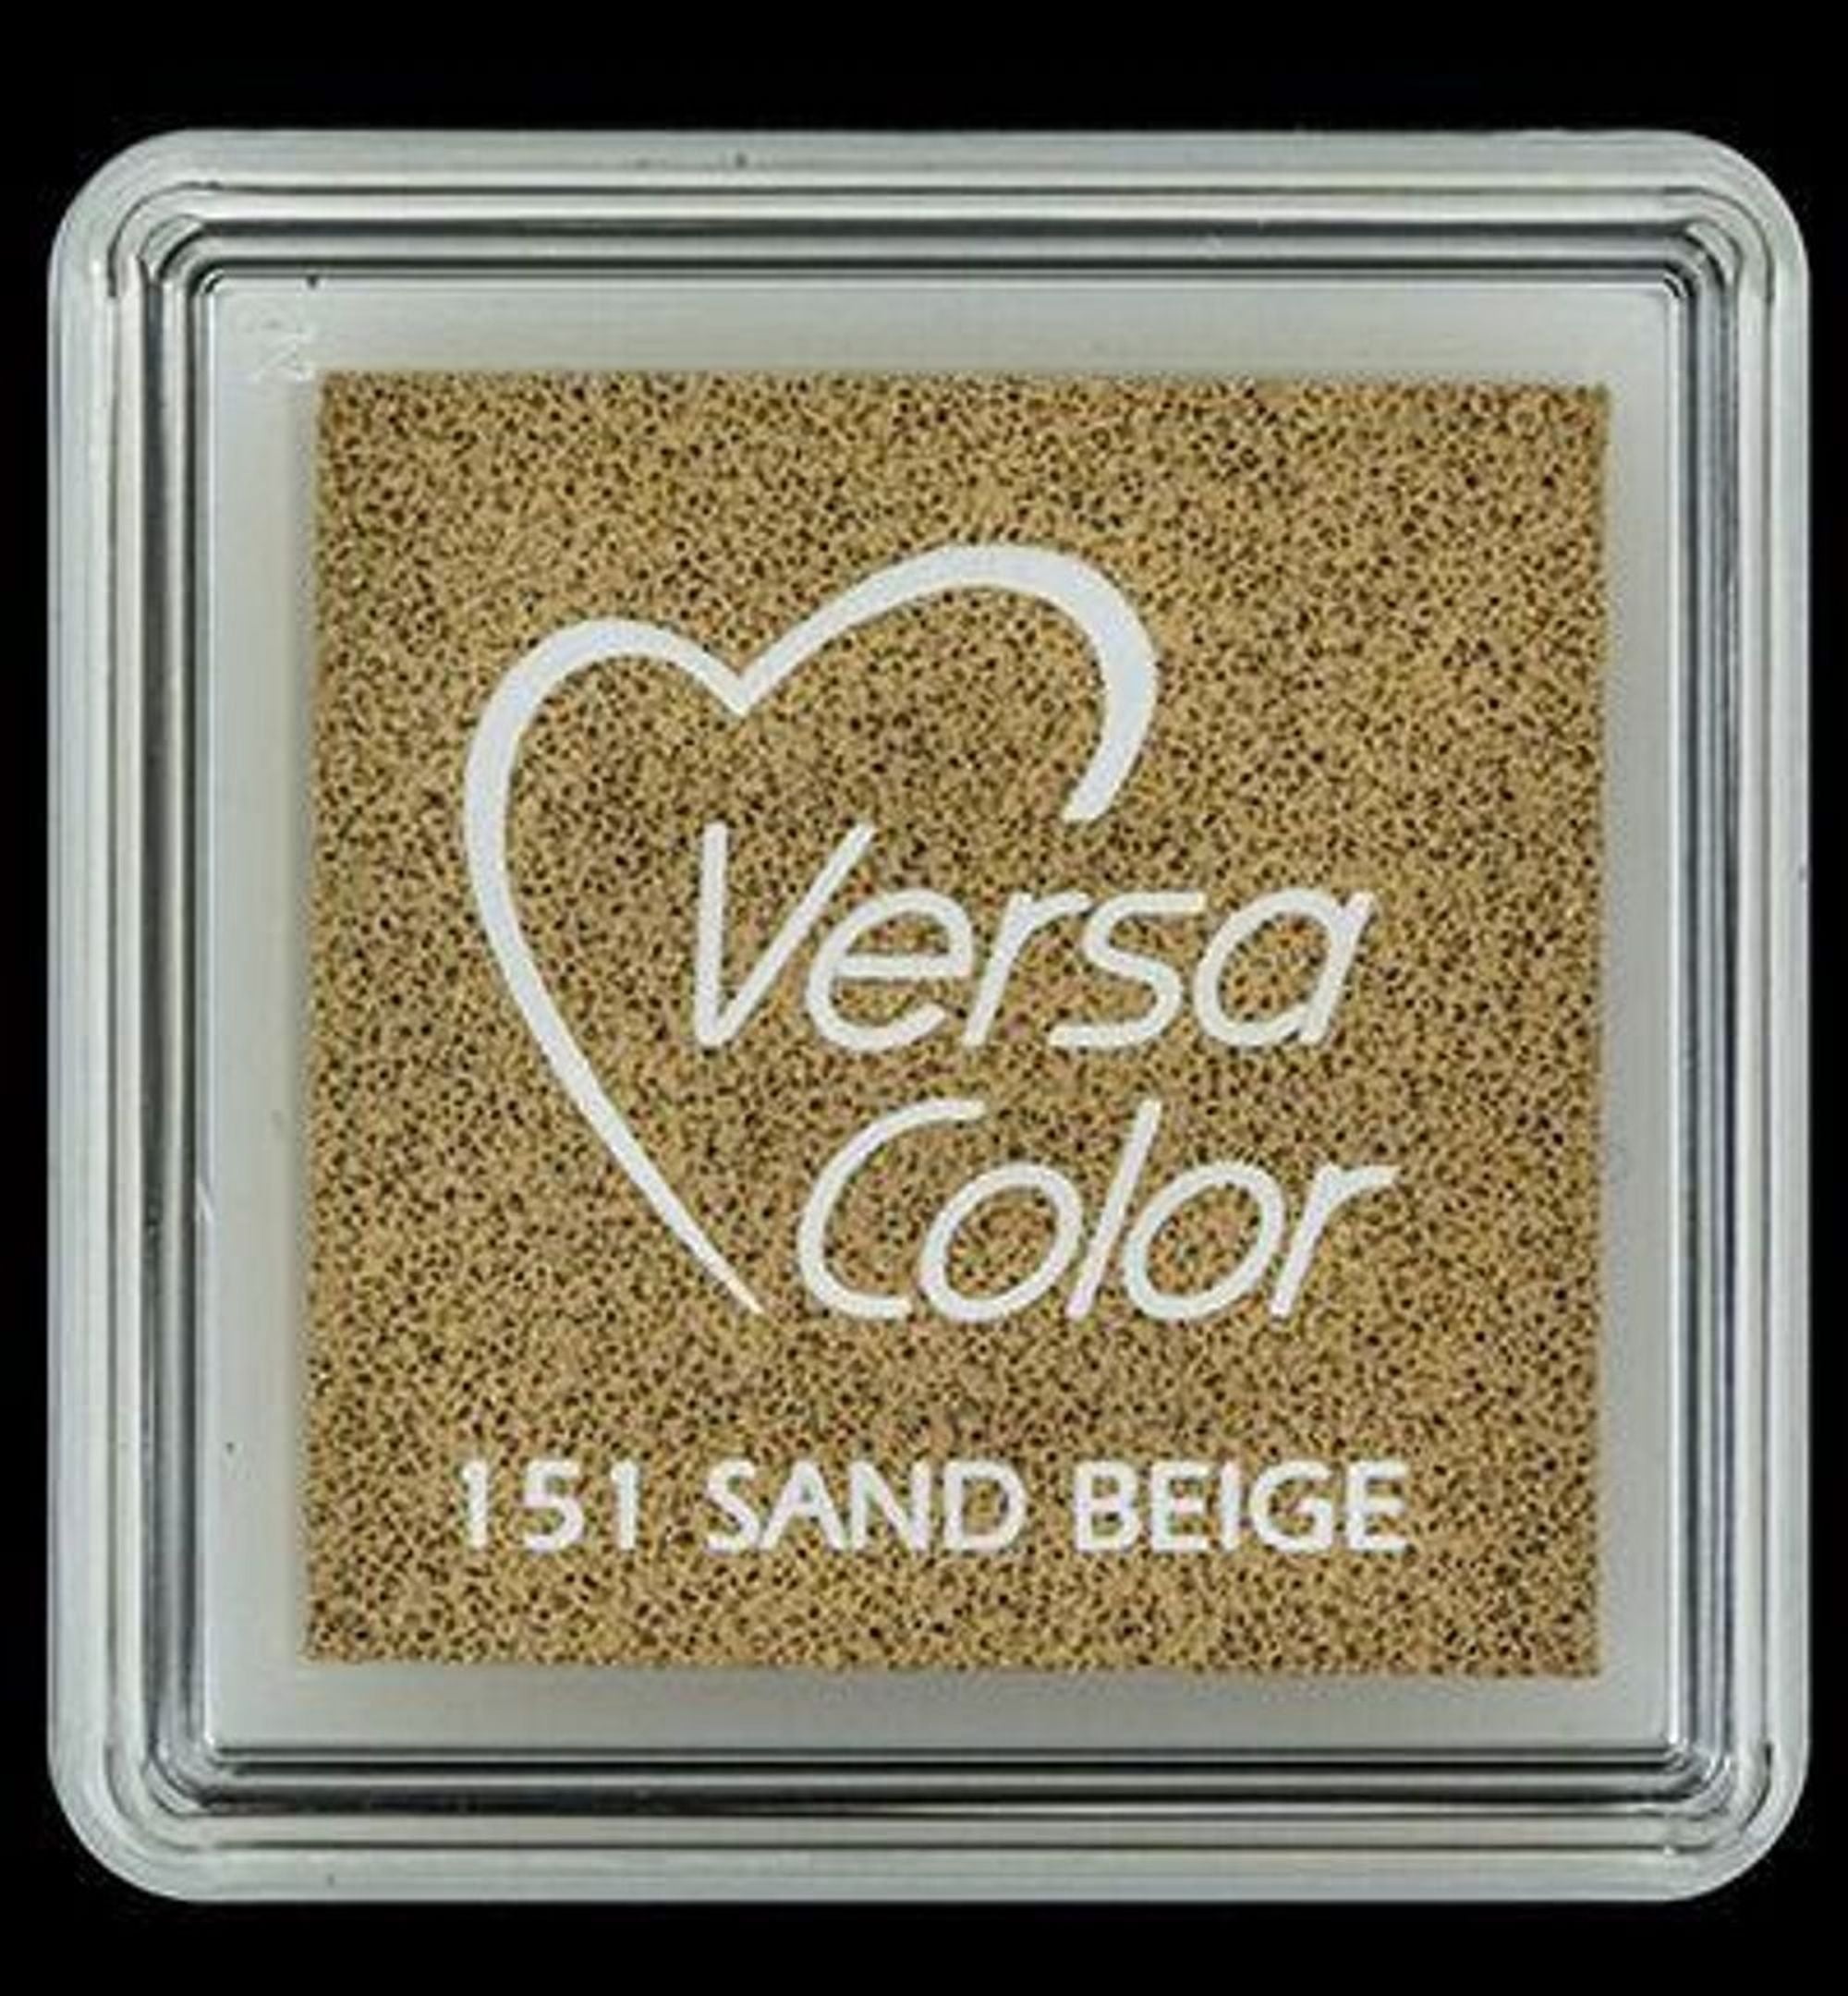 #colour_sand beige